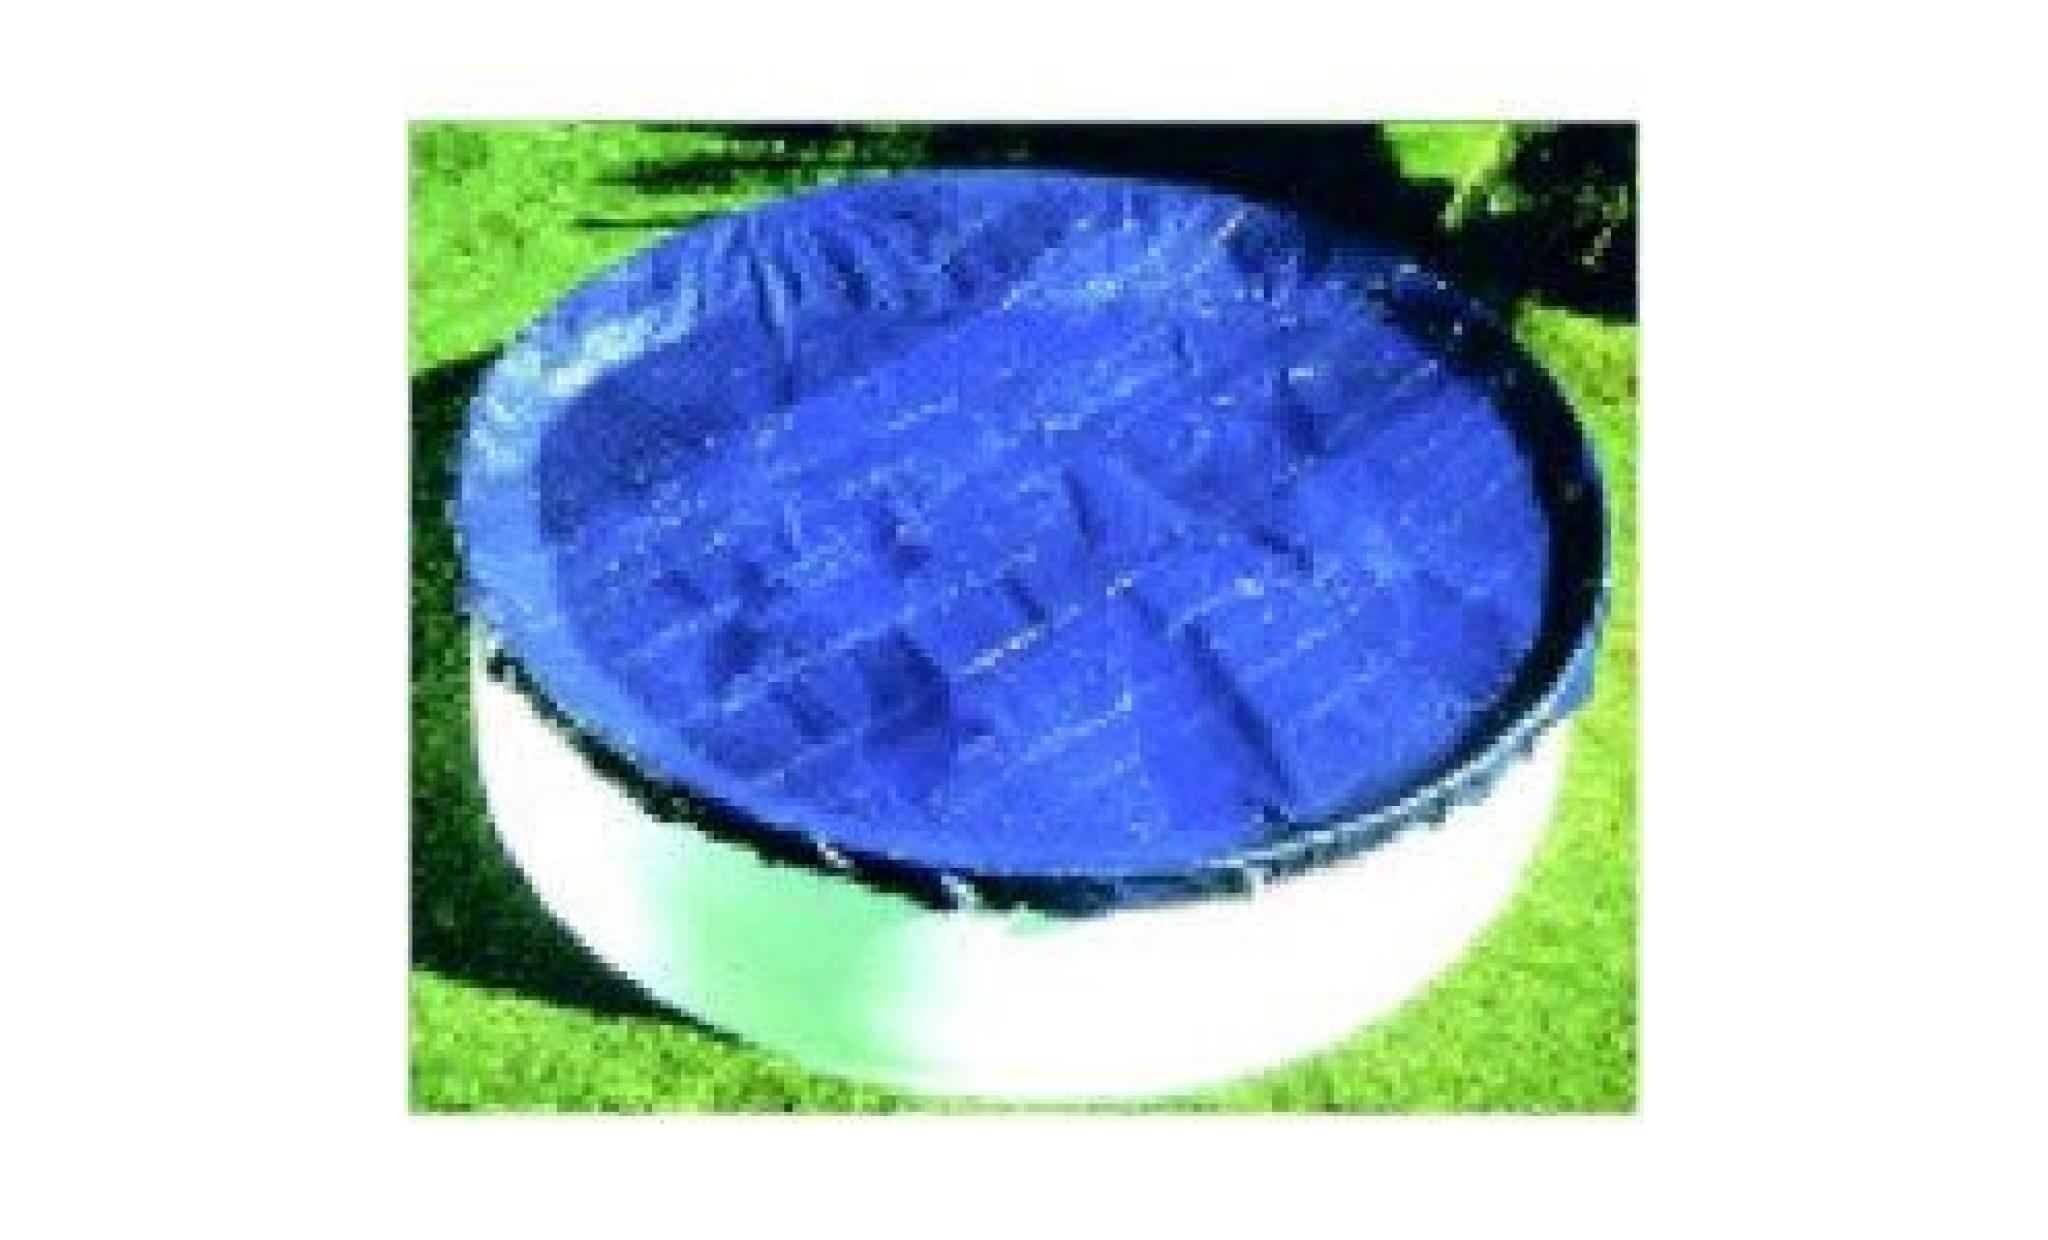 bâche opaque piscine octogonale allongée, dimensions bâche 5.85x3.77m